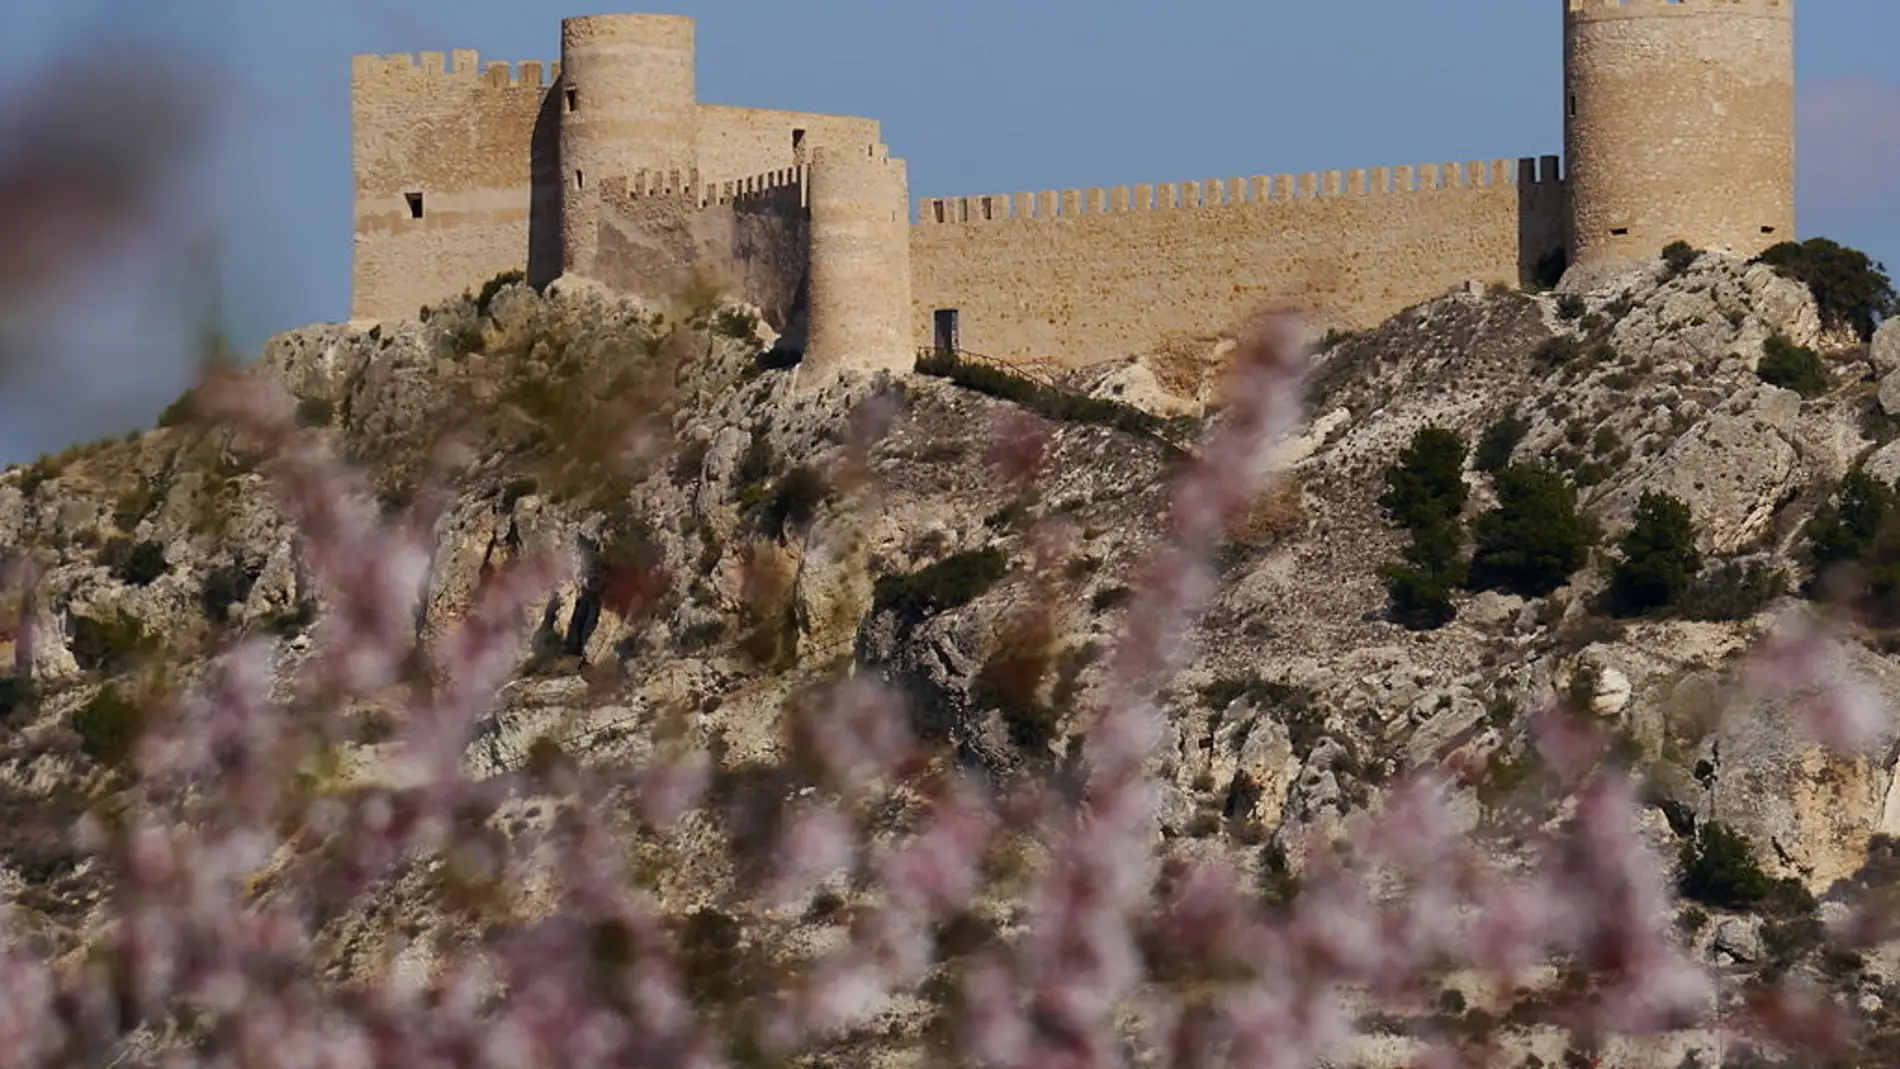 Castillo de Castalla: ¿sabías que fue una fortaleza clave para diversas e históricas batallas?